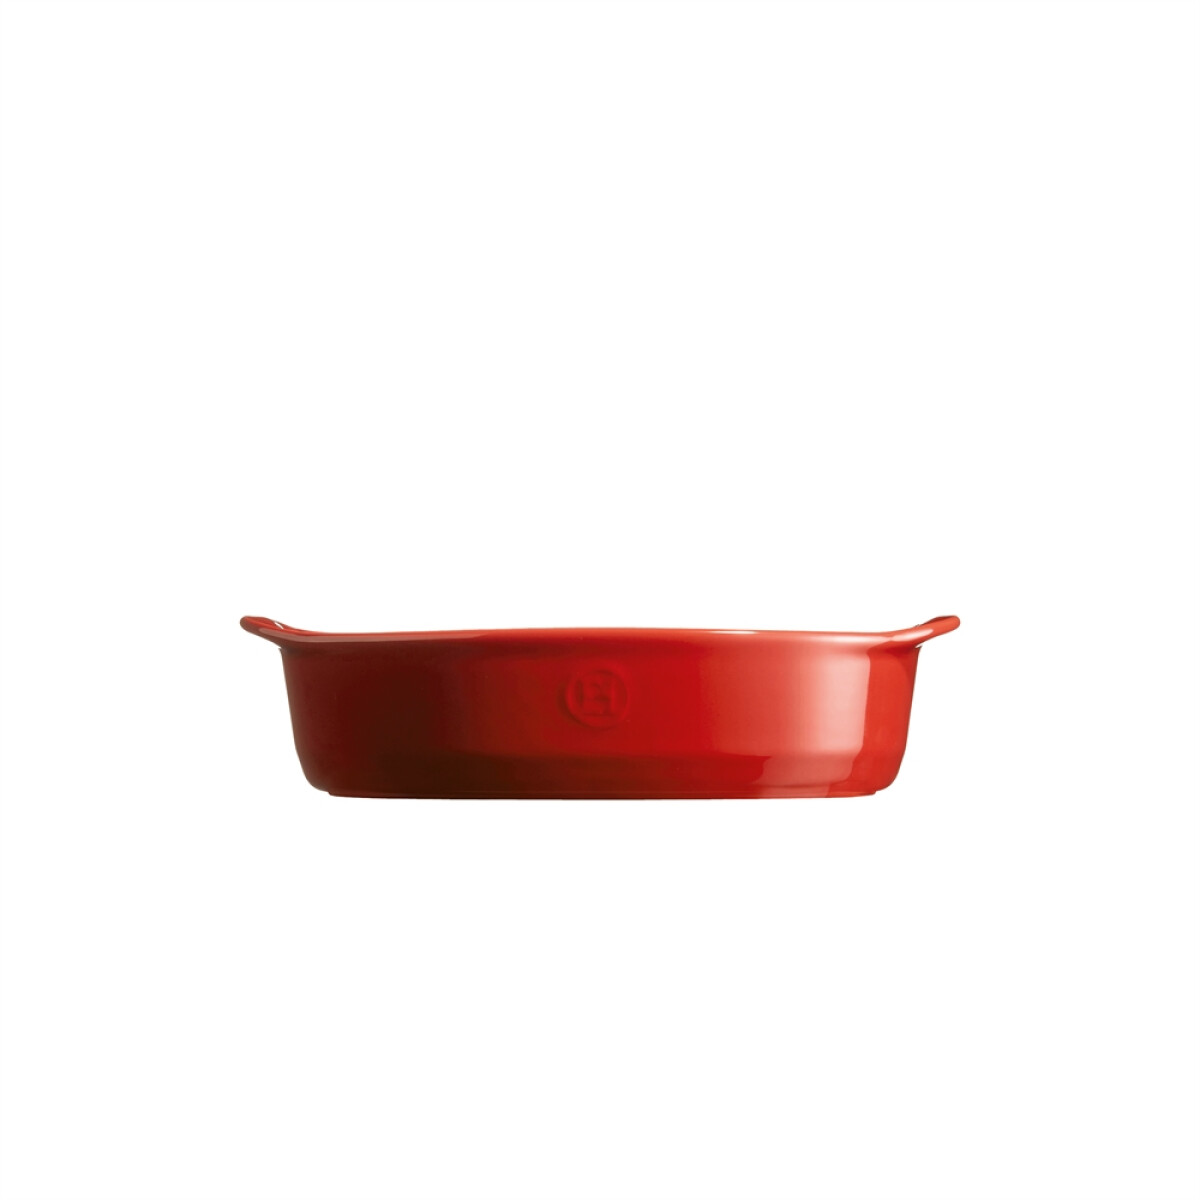 Керамична тава EMILE HENRY SMALL OVAL OVEN DISH - цвят червен